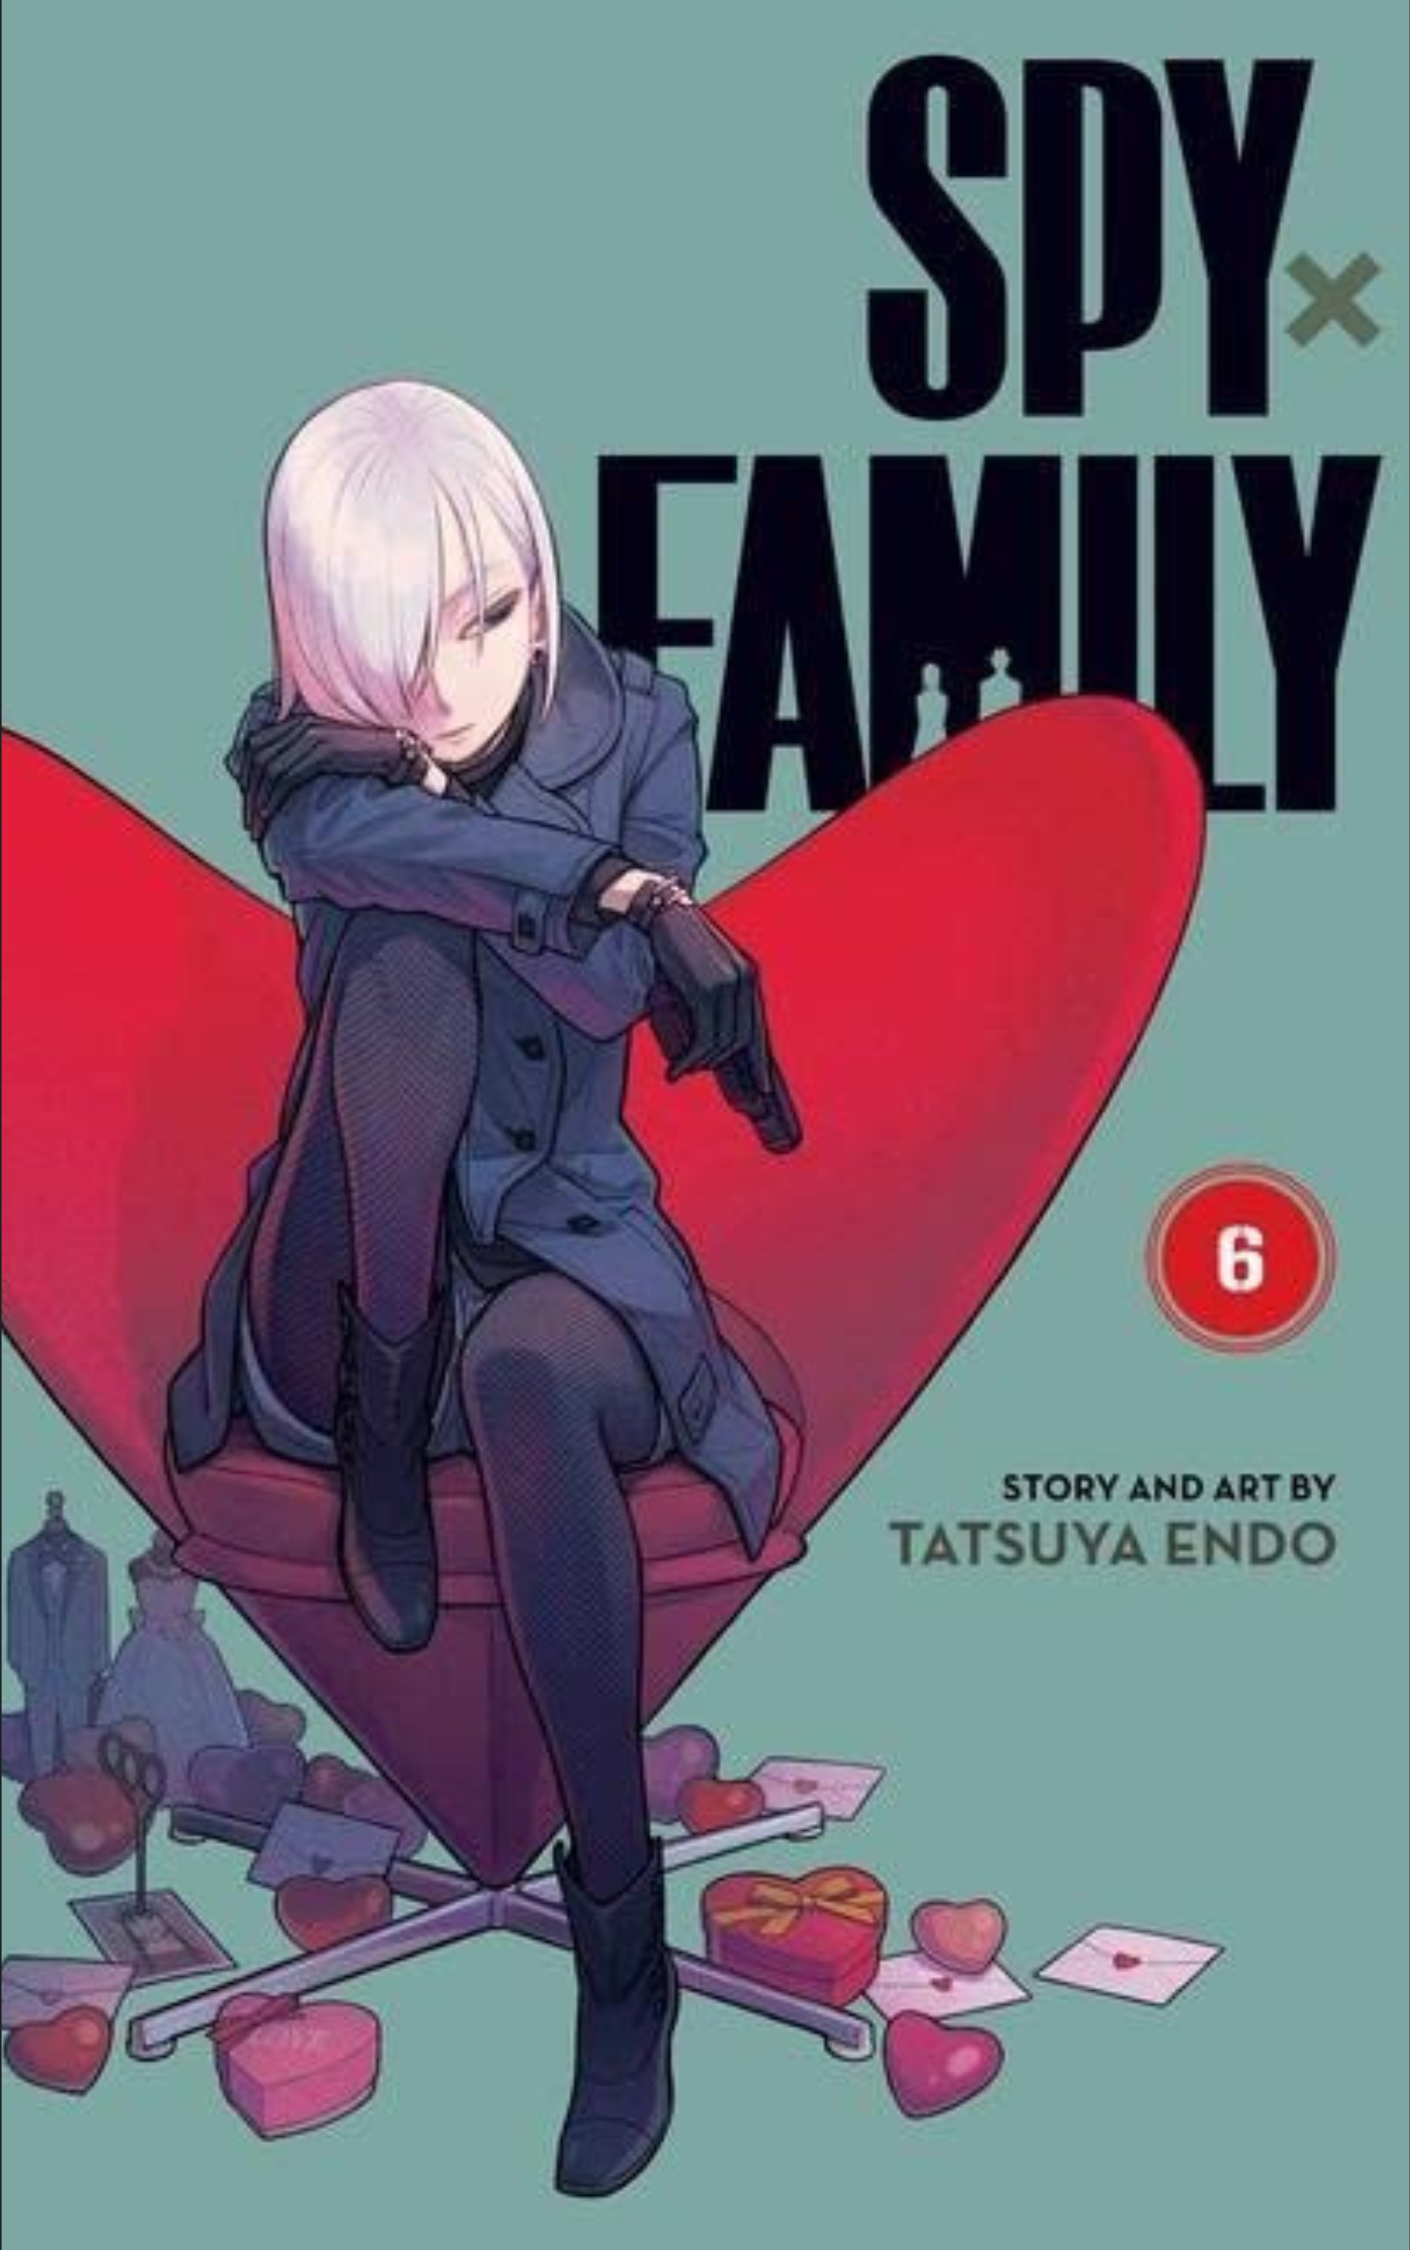 SPY X FAMILY, VOL 6 BY TATSUYA ENDO